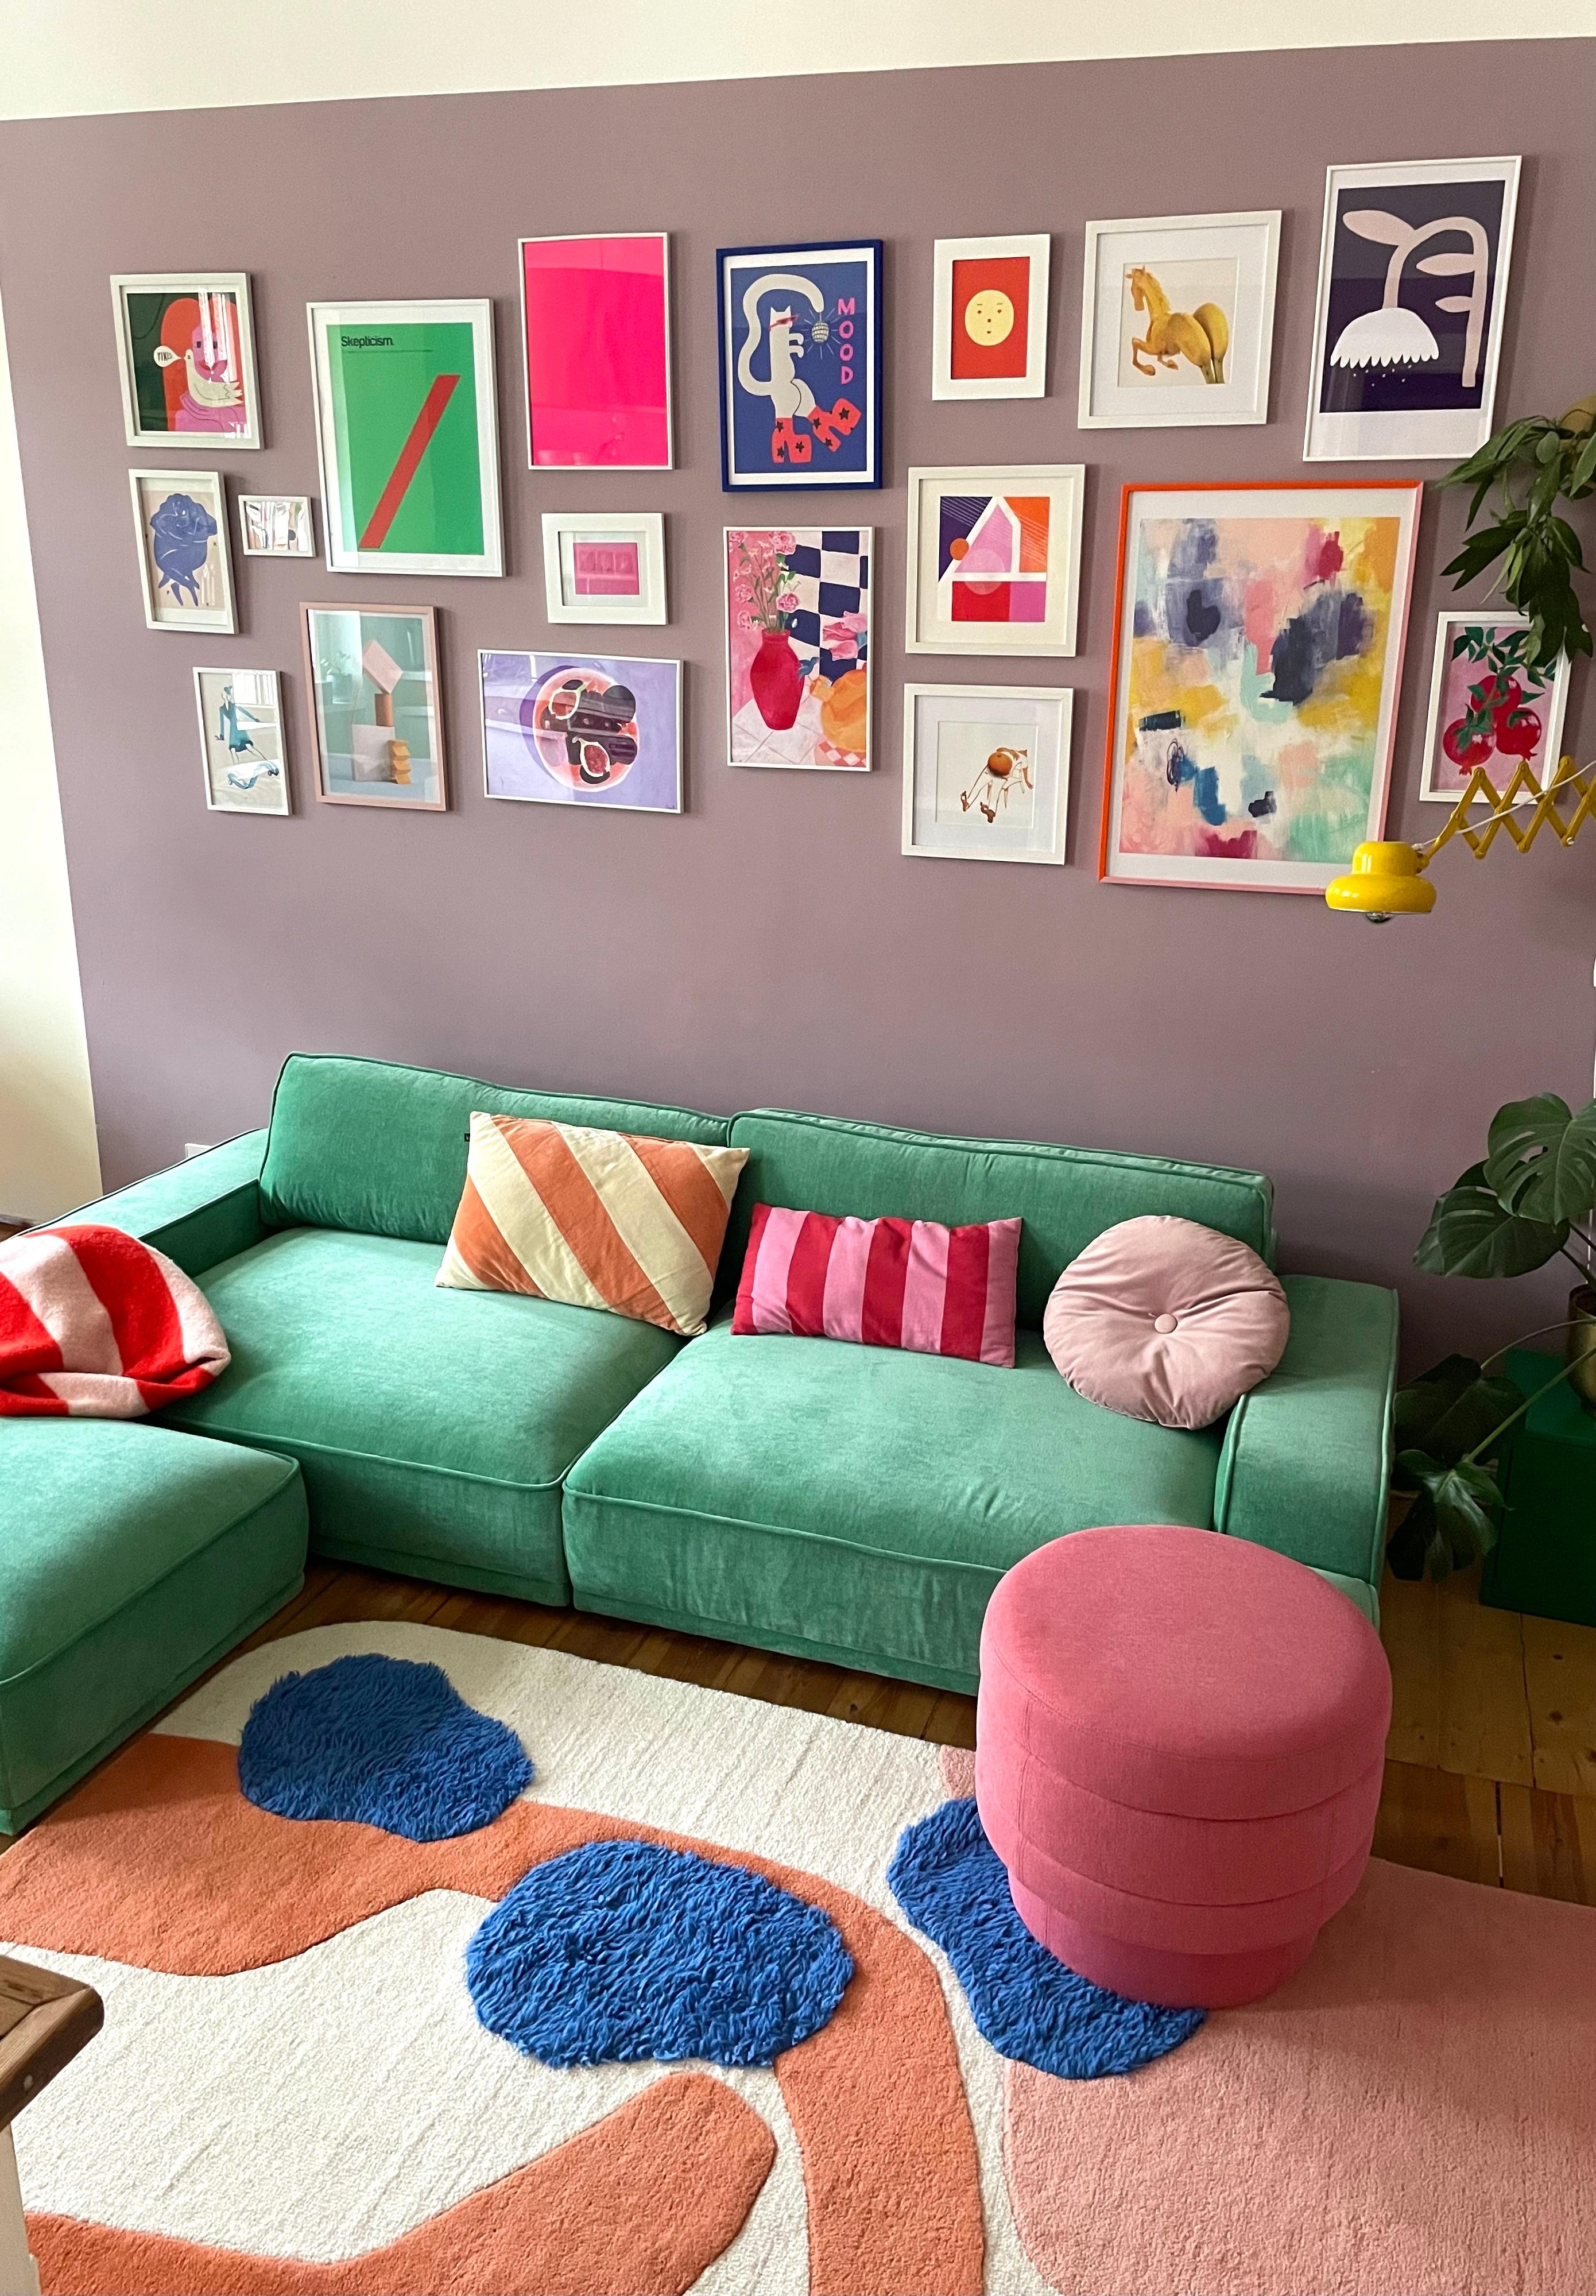 #wohnzimmer #bunt #colorful #buntewände #sofa #gemütlich